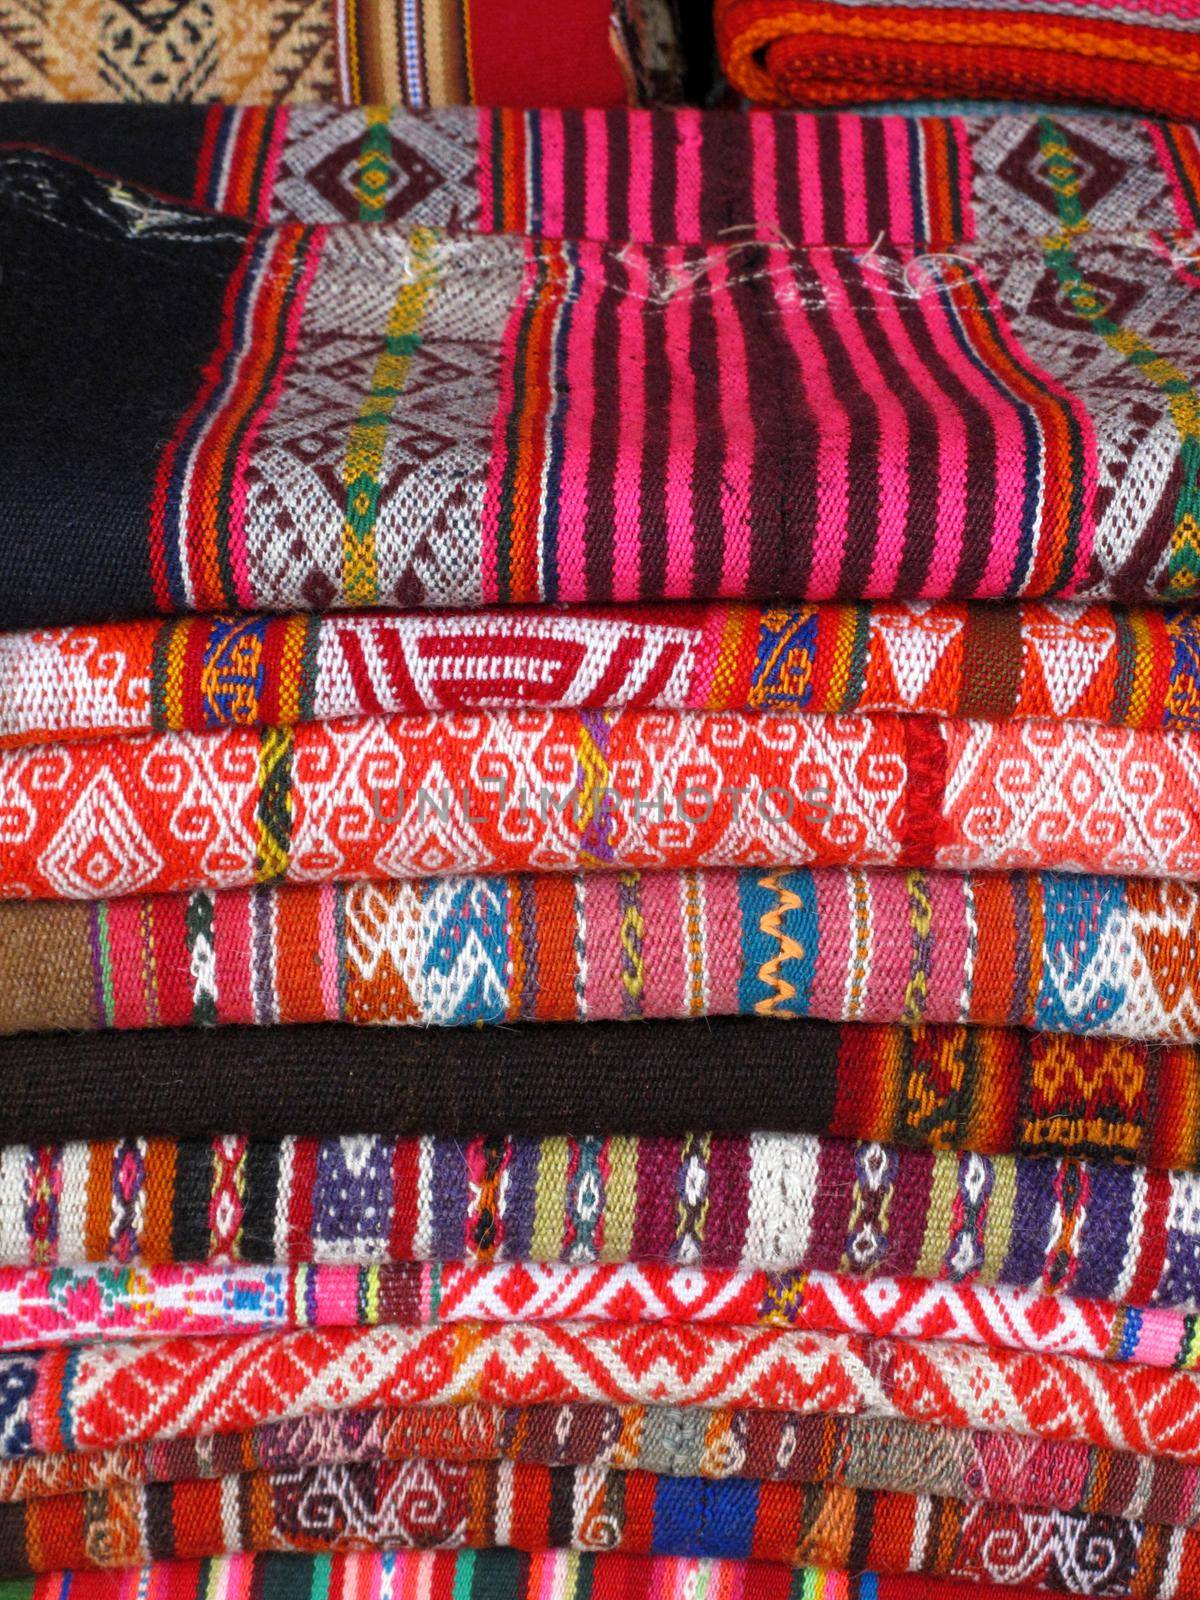 Peruvian Hand Made Woolen Fabric by aroas